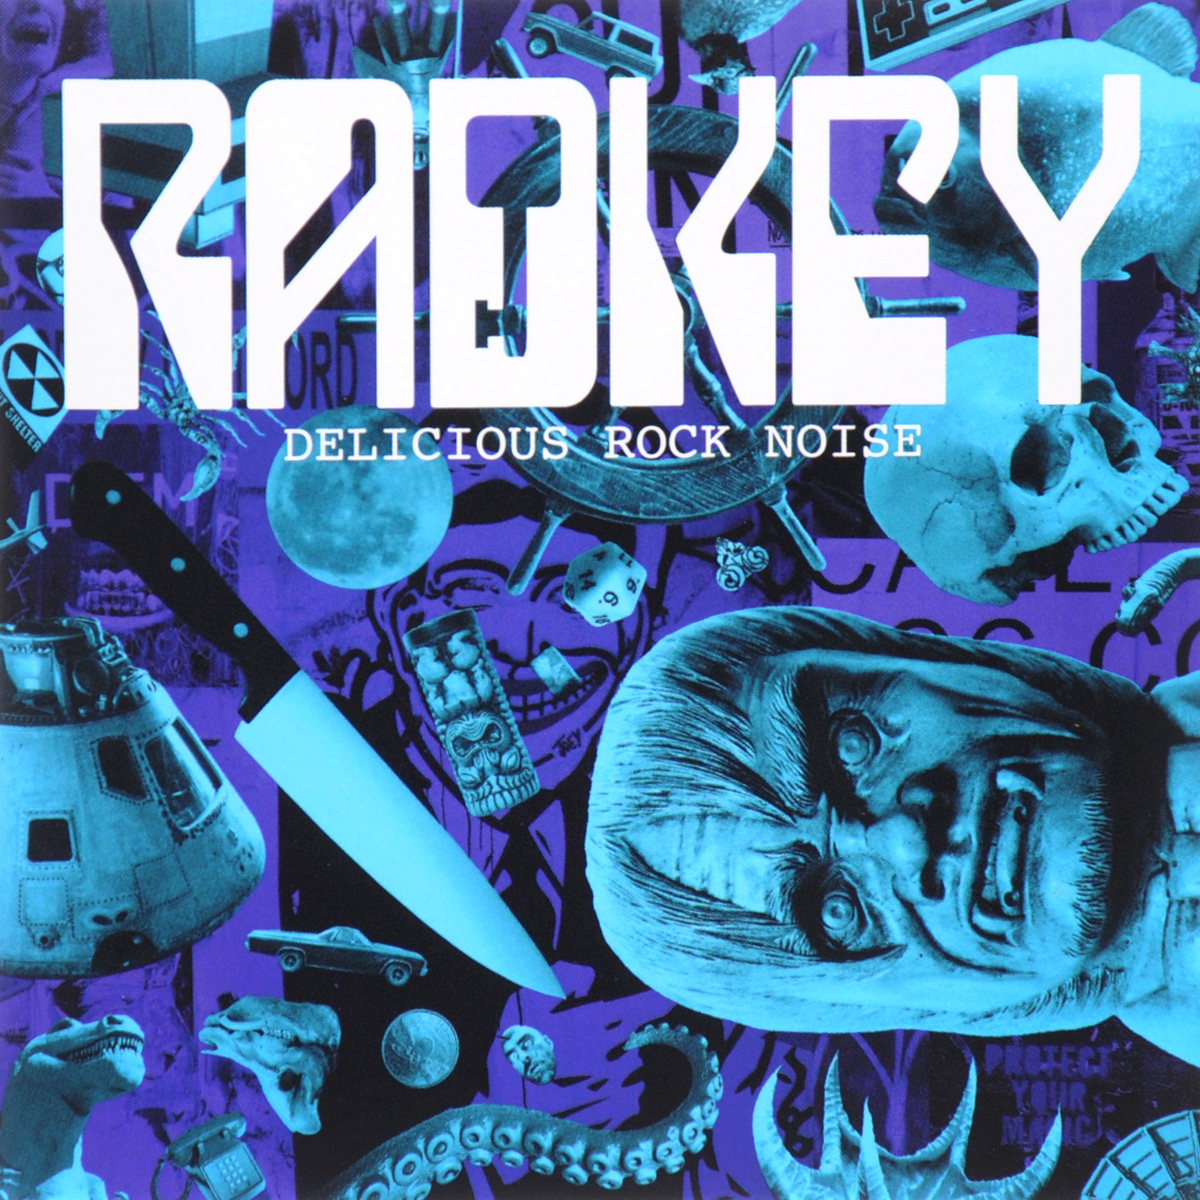 Radkey. Delicious Rock Noise